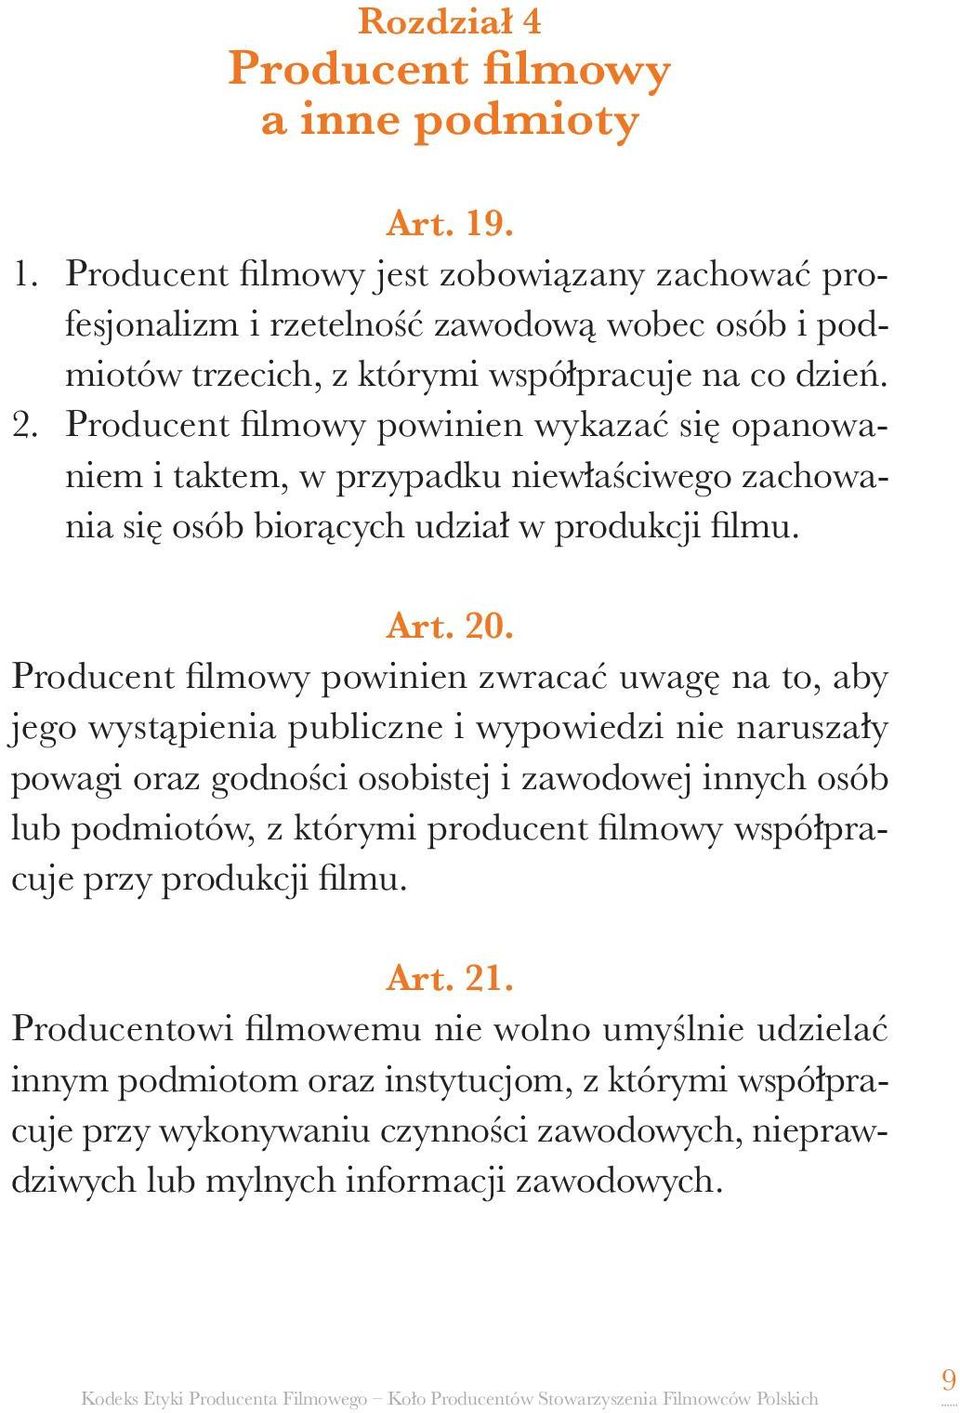 Producent filmowy powinien wykazać się opanowaniem i taktem, w przypadku niewłaściwego zachowania się osób biorących udział w produkcji filmu. Art. 20.